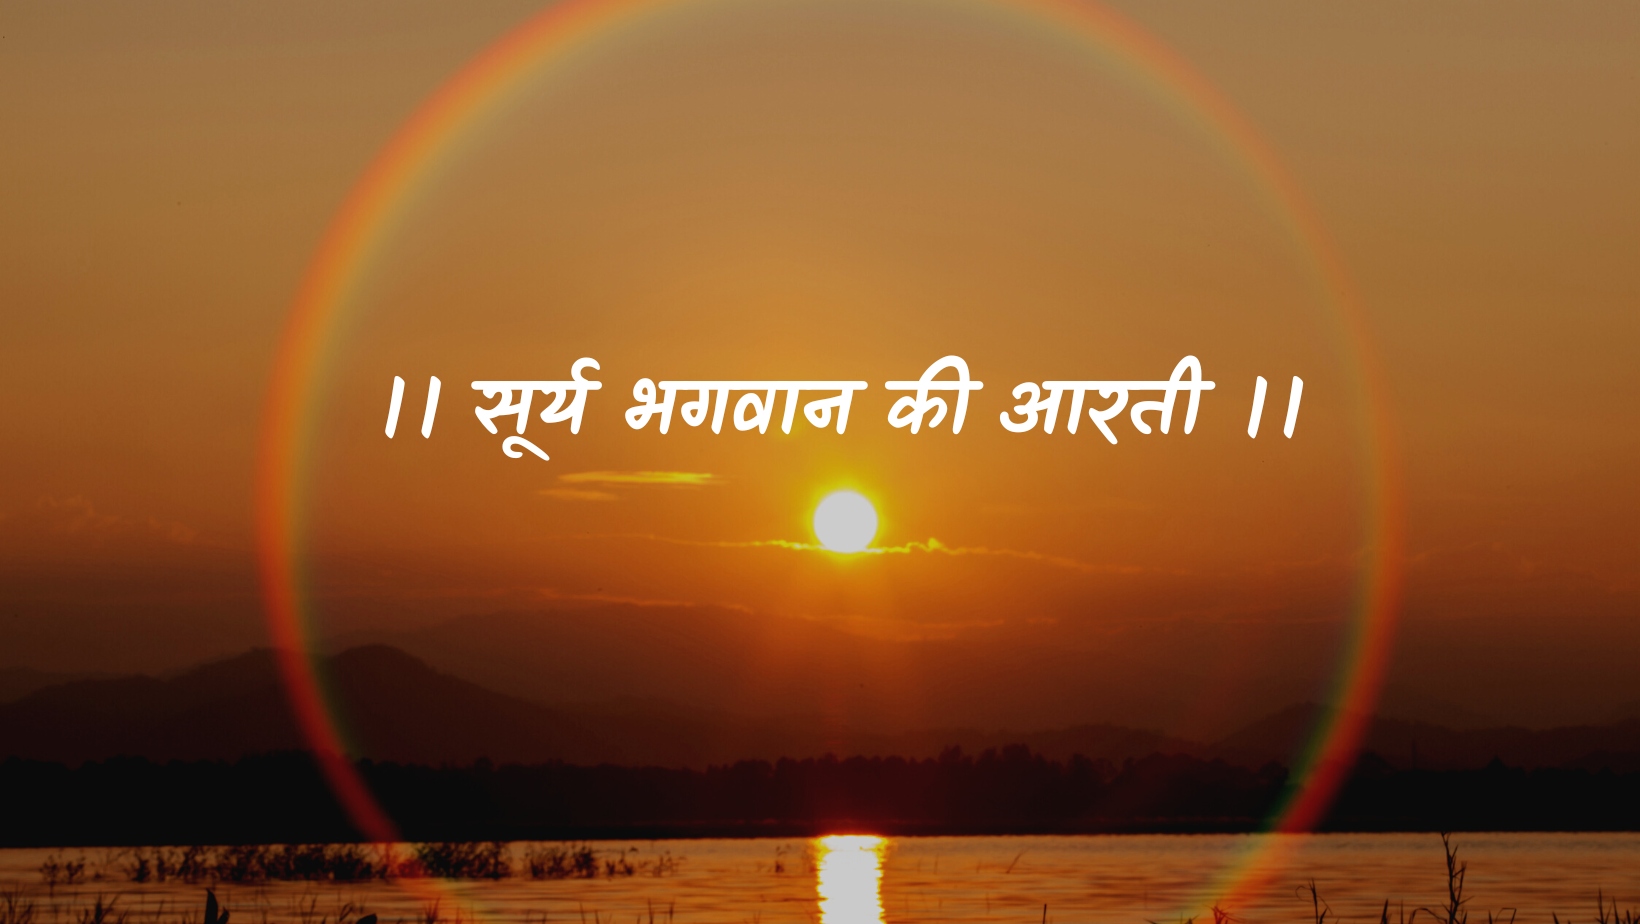 सूर्य भगवान की आरती | Surya Bhagvan ki aarti by विकास